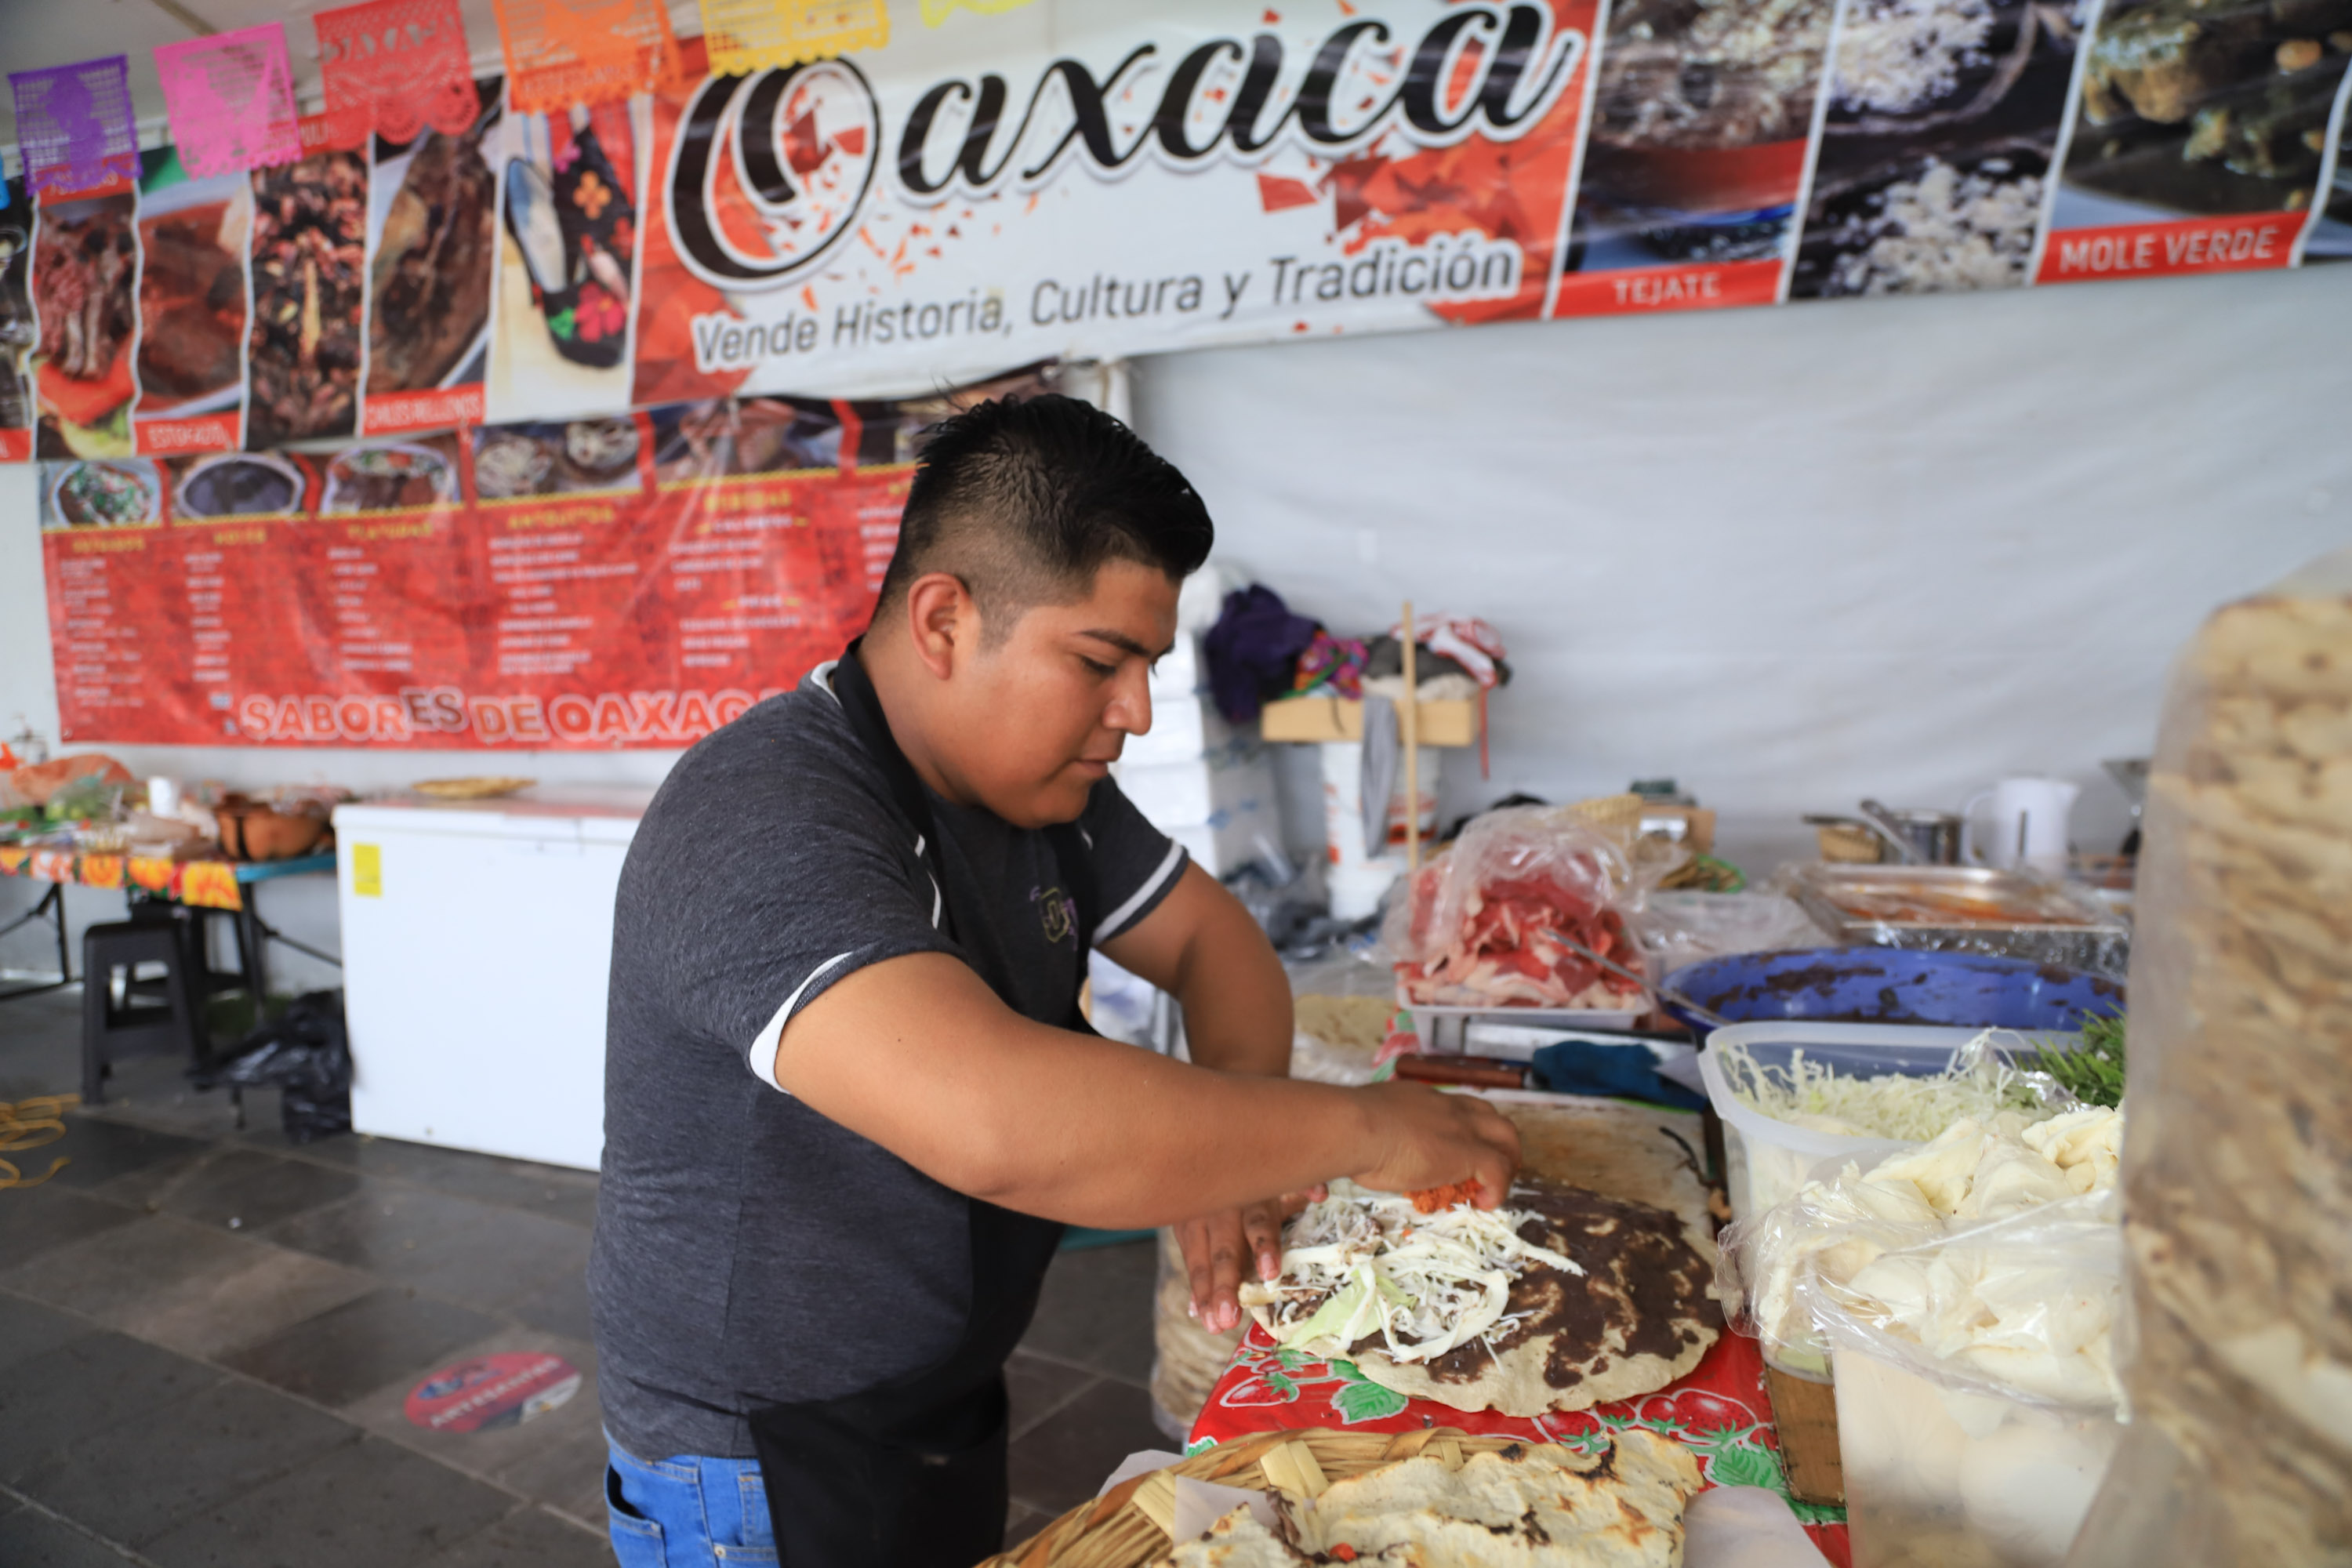 VIDEO Arranca en el Parque del Carmen la Feria Oaxaca en Puebla